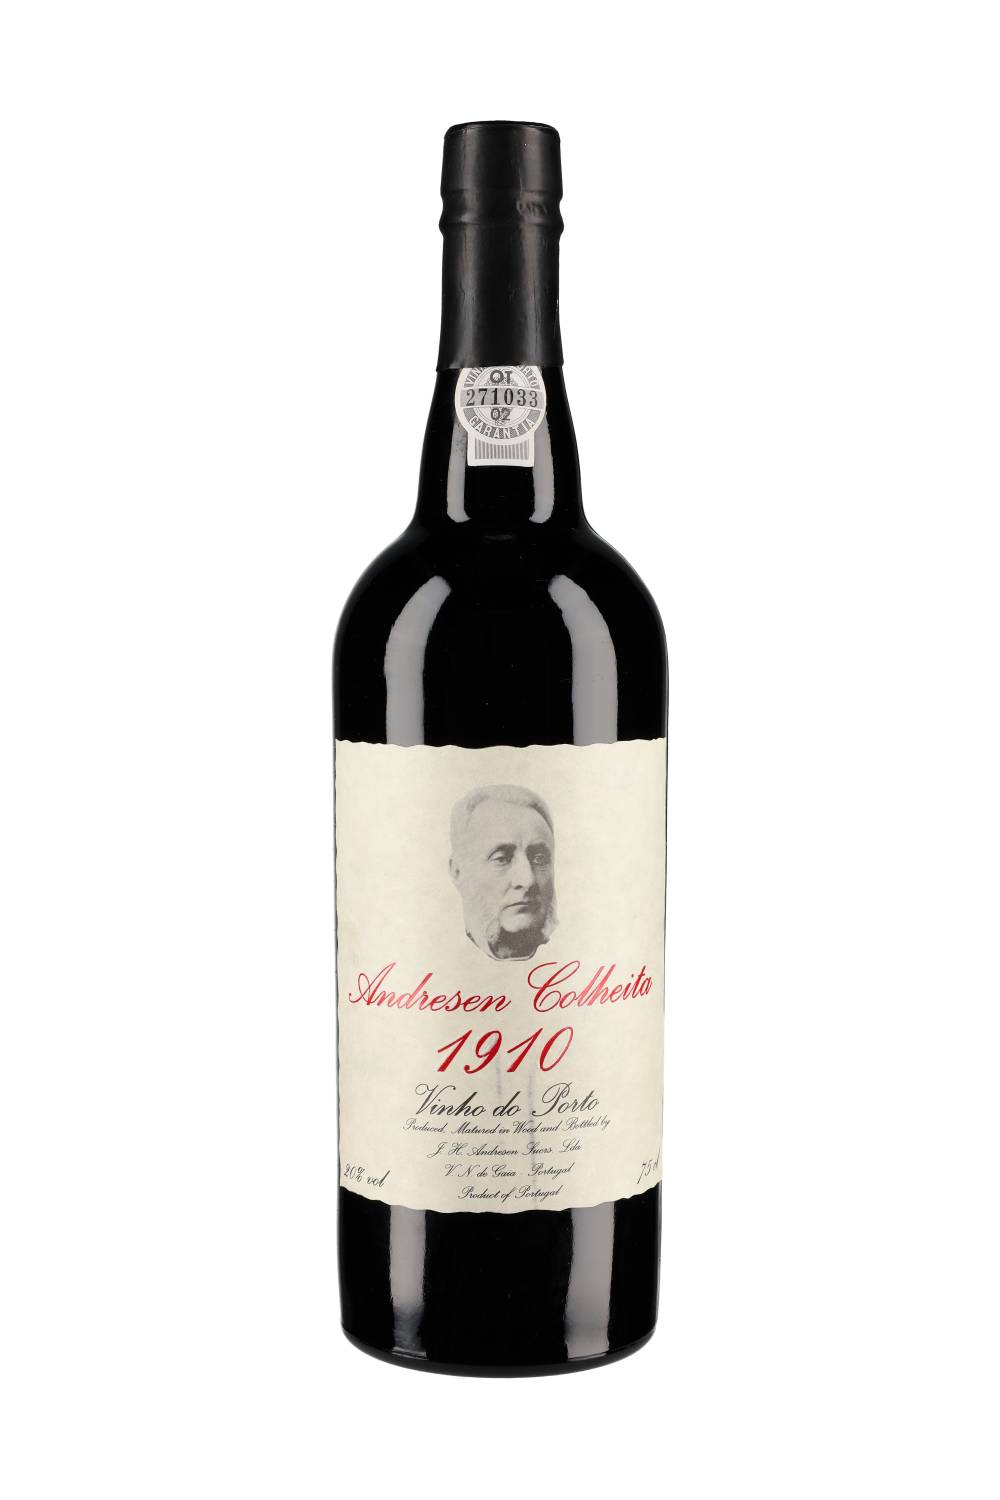 J.H. Andresen Colheita Port Cask 325 (bottled 2000) 1910